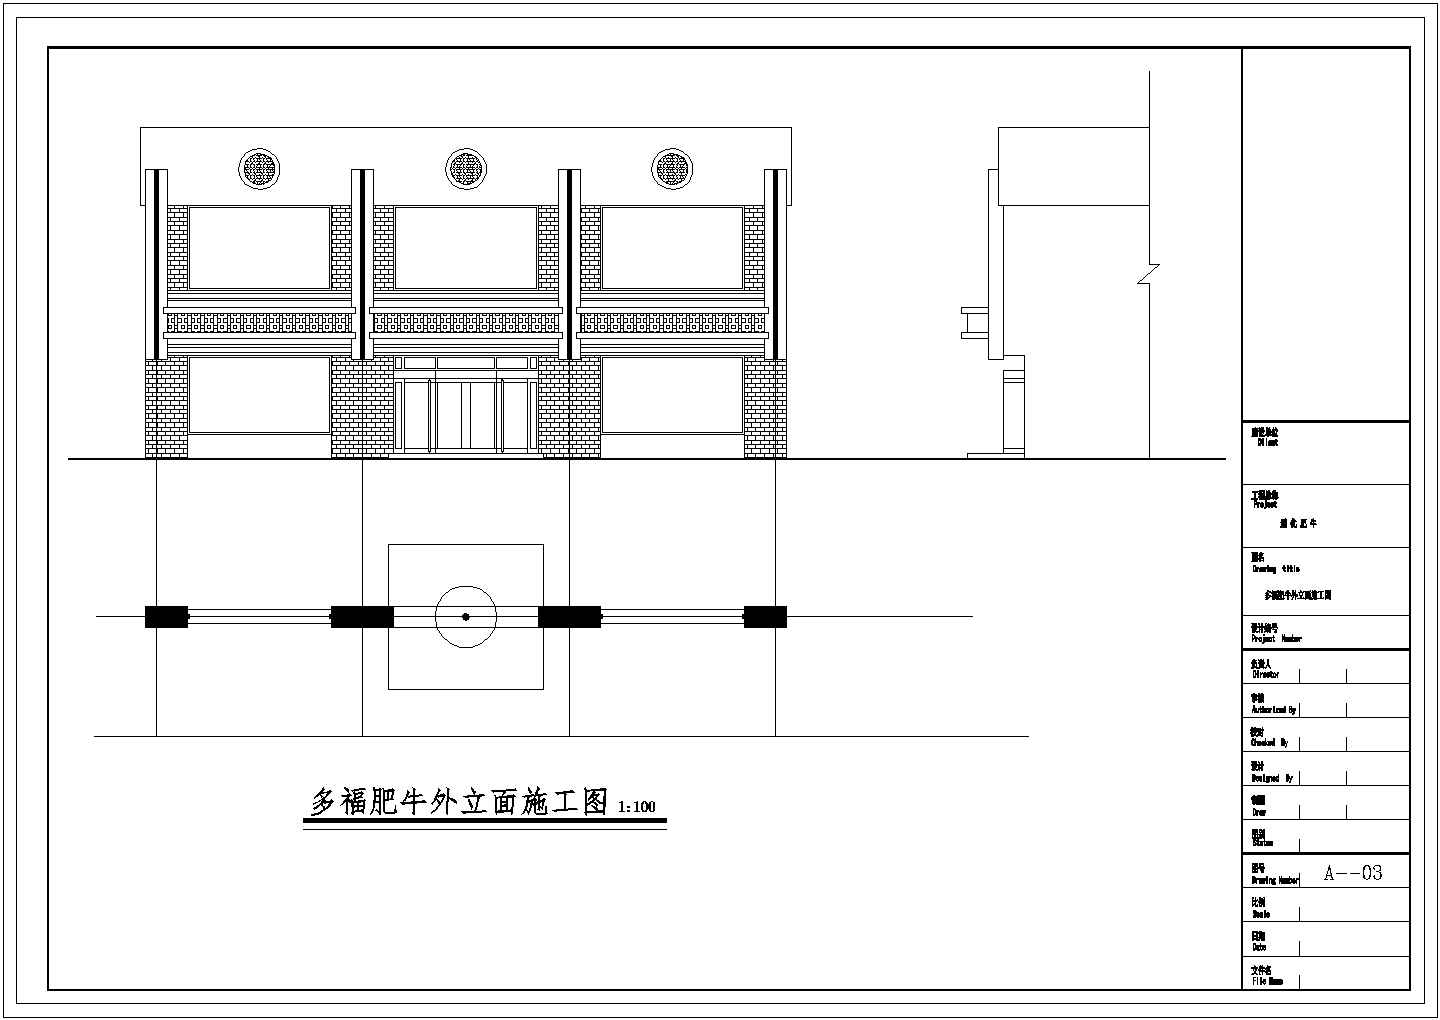 江苏省无锡市三阳广场某连锁火锅店设计施工图